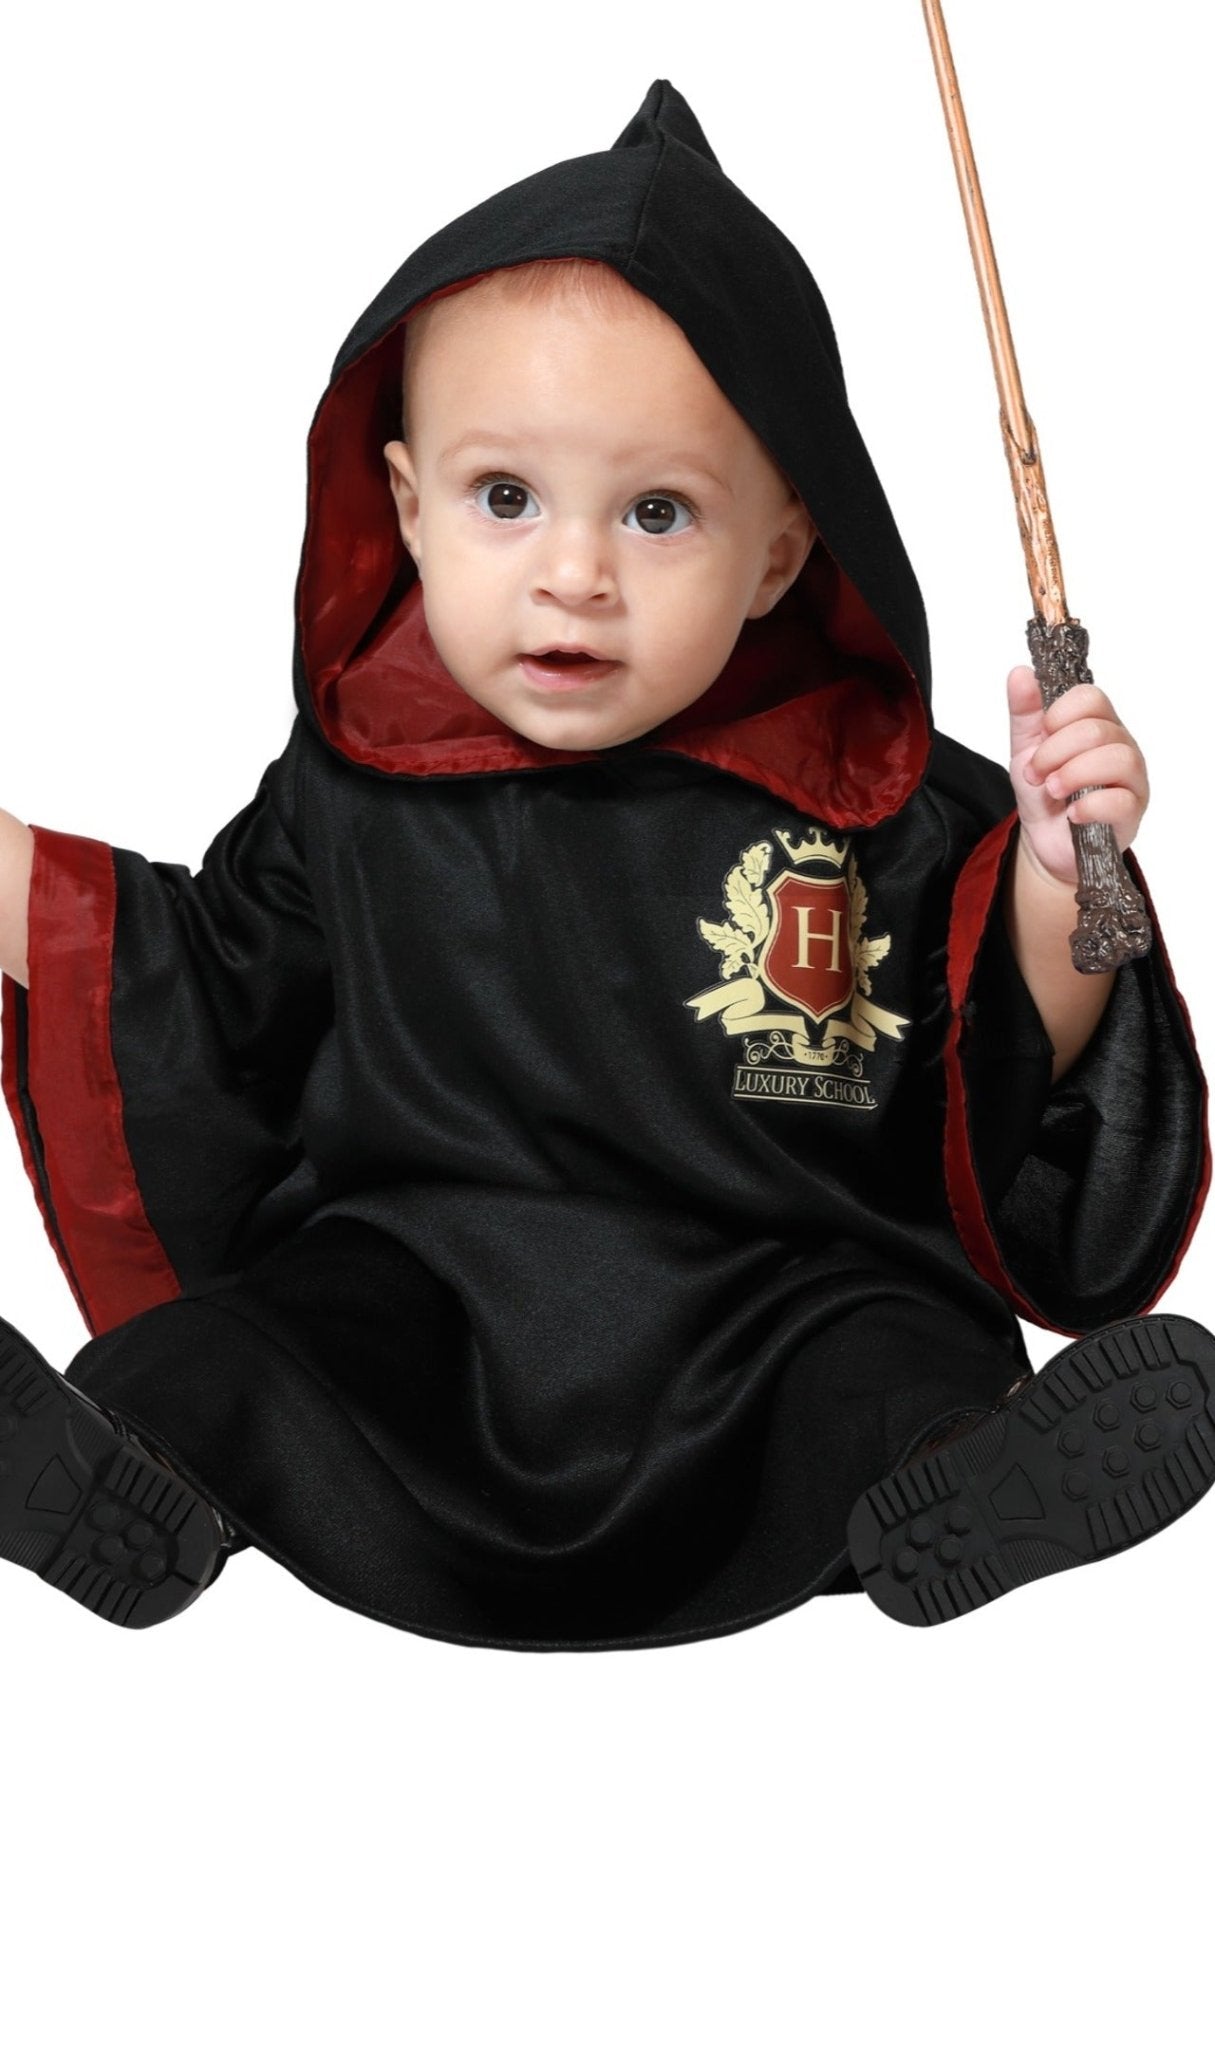 Comprar online Disfraz de Mago Harry School para beb